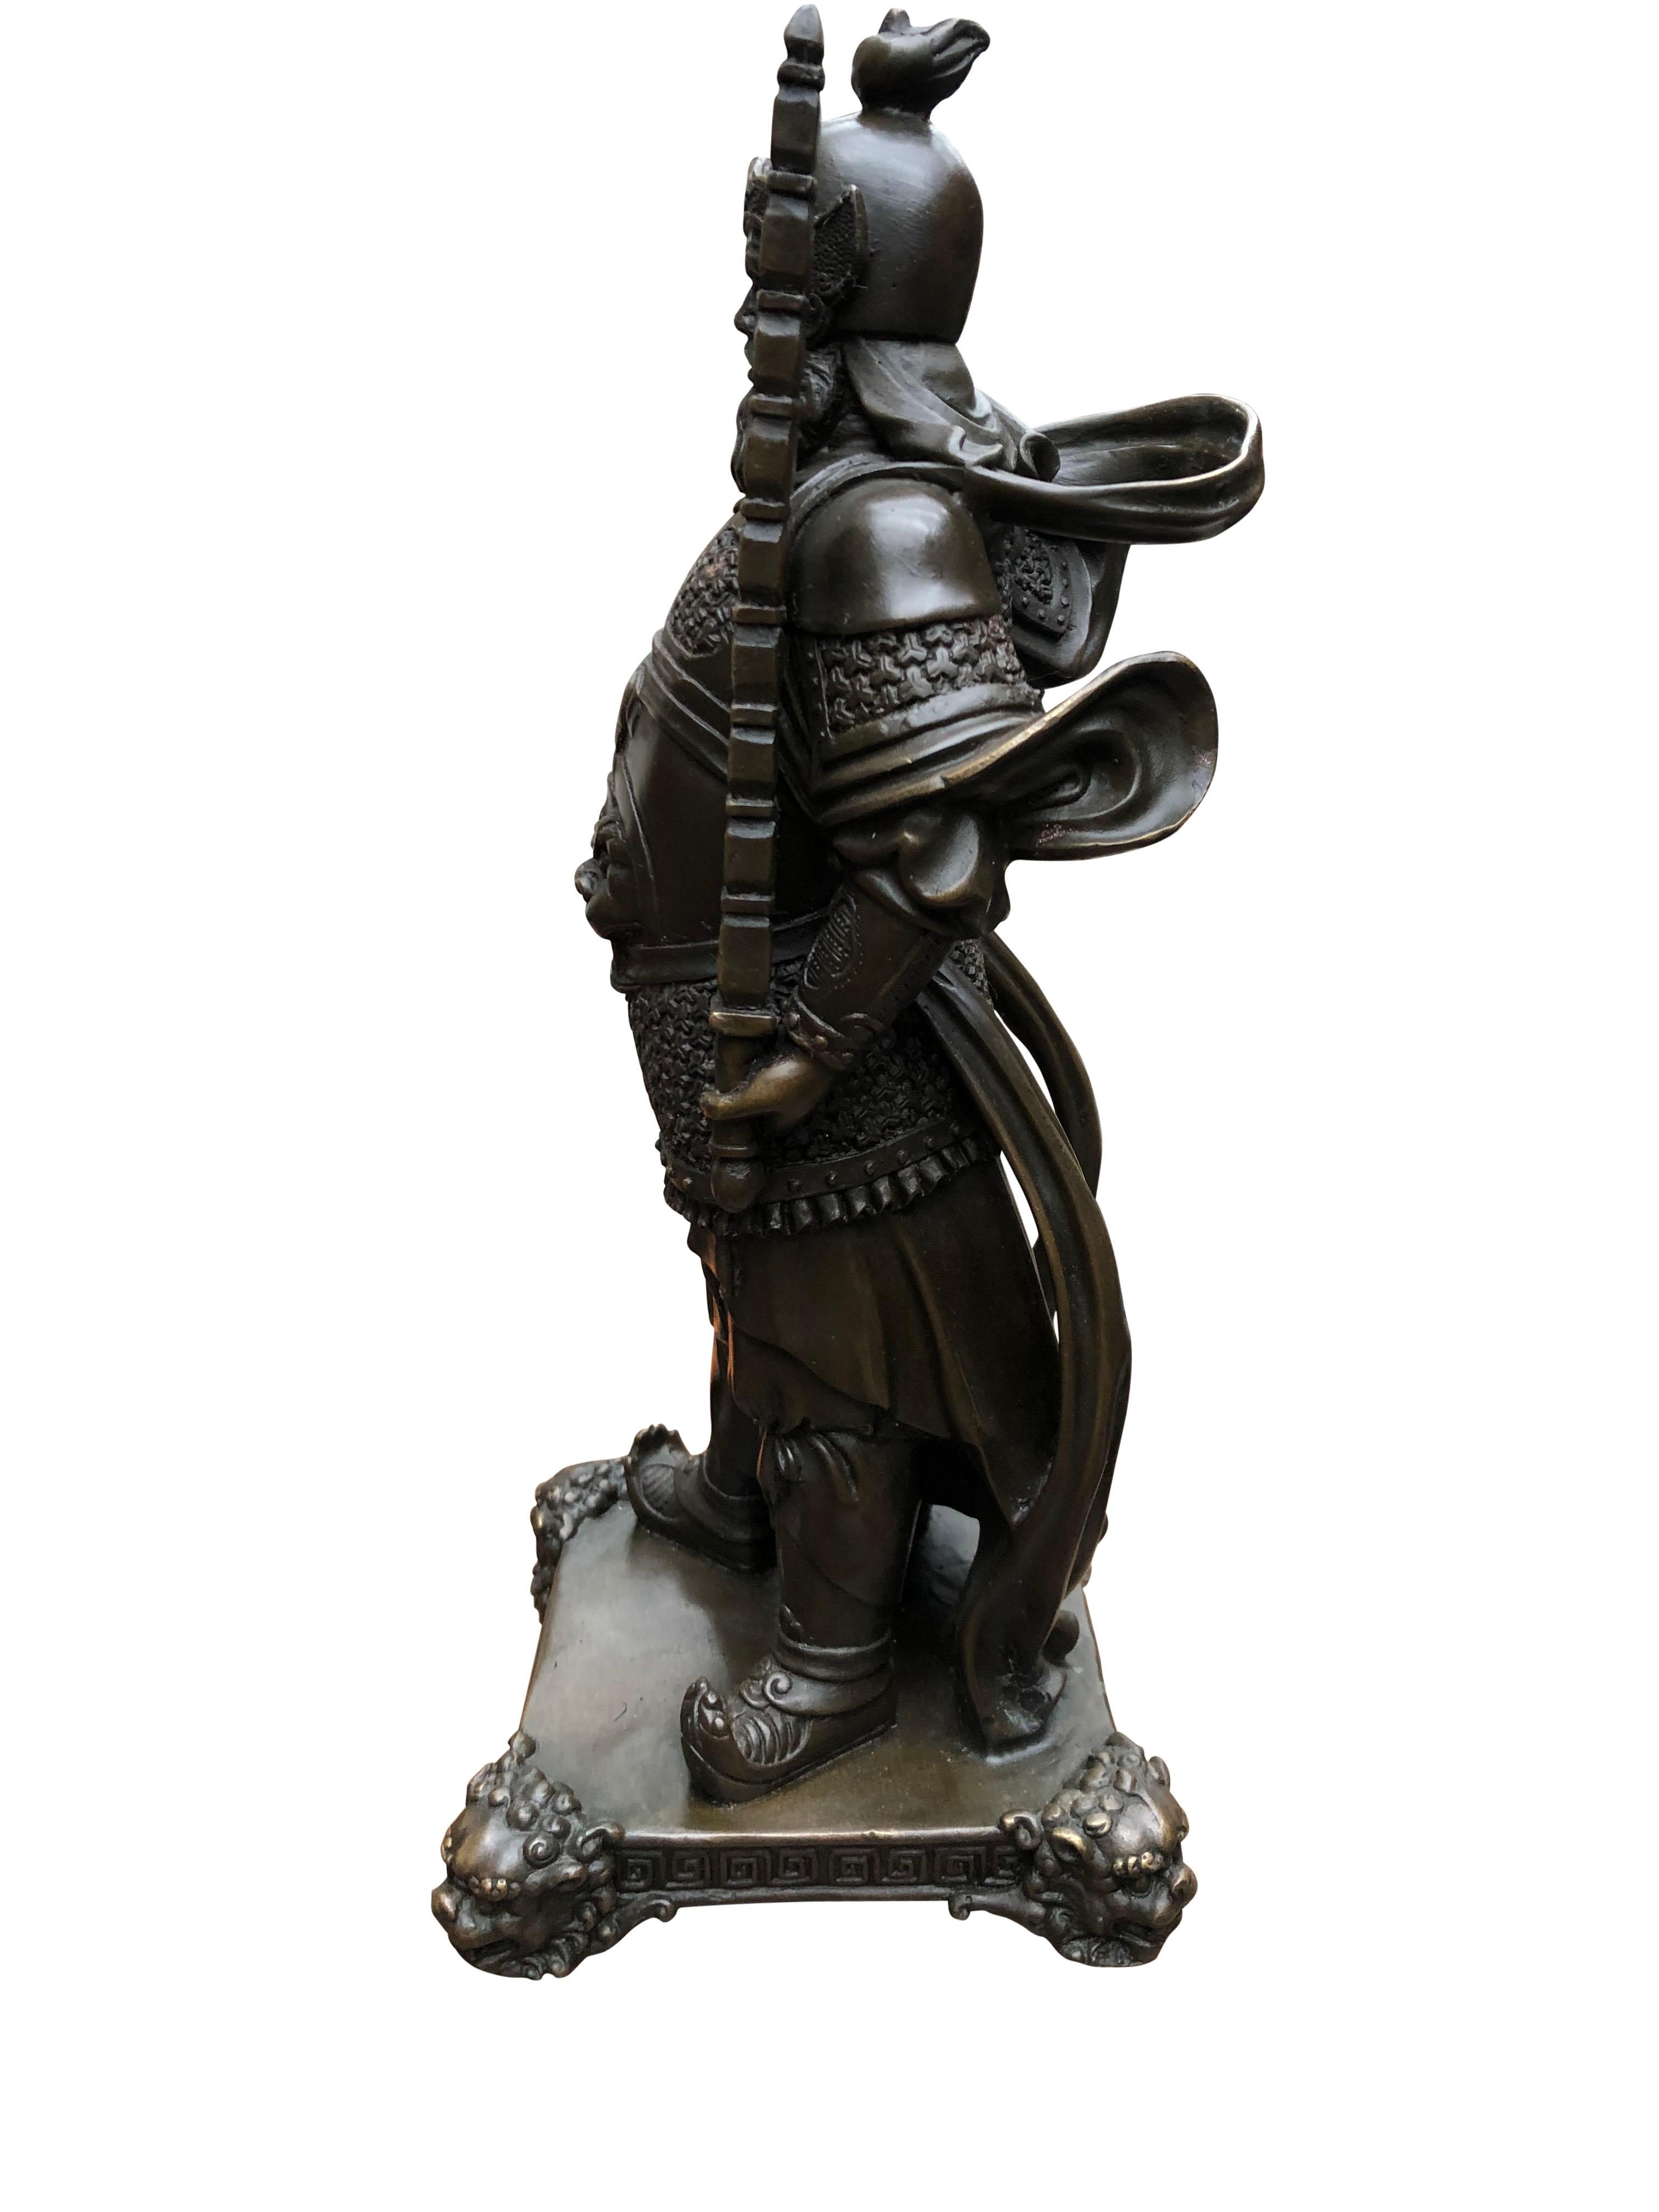 French Pair of Bronze Japanese Samurai Warrior Statues Military Art, 20th Century